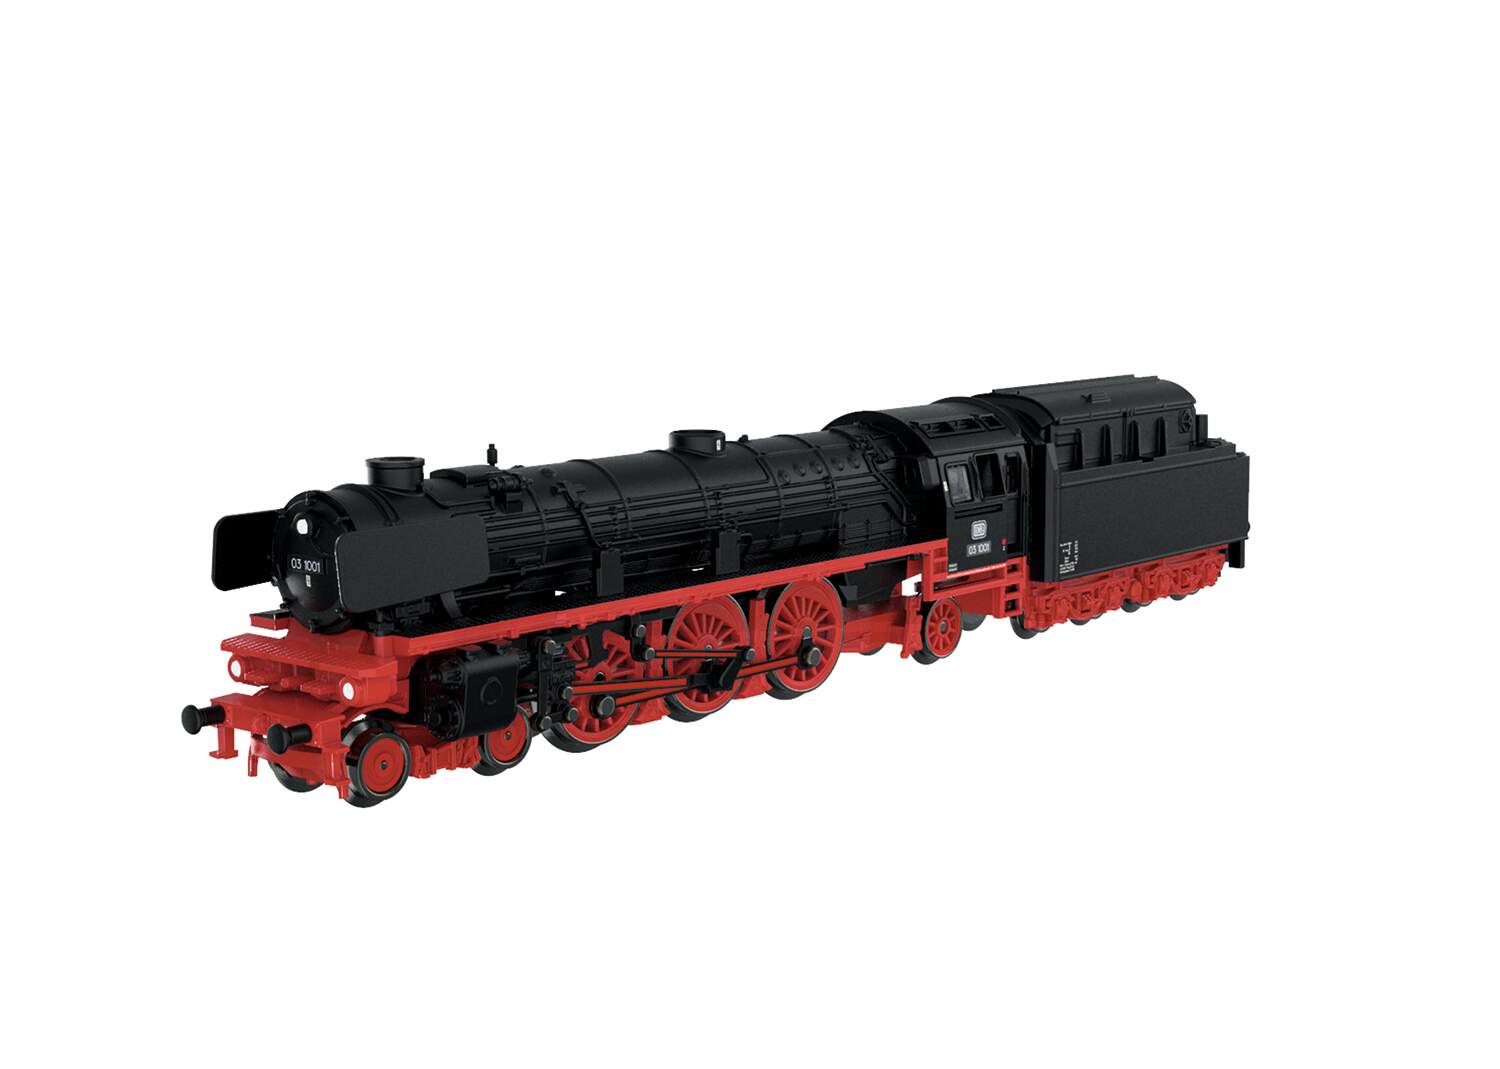 Marklin Z 88850 Class 03.10 4-6-2 - Standard DC - - German Federal Railroad DB (Era III, black, red)